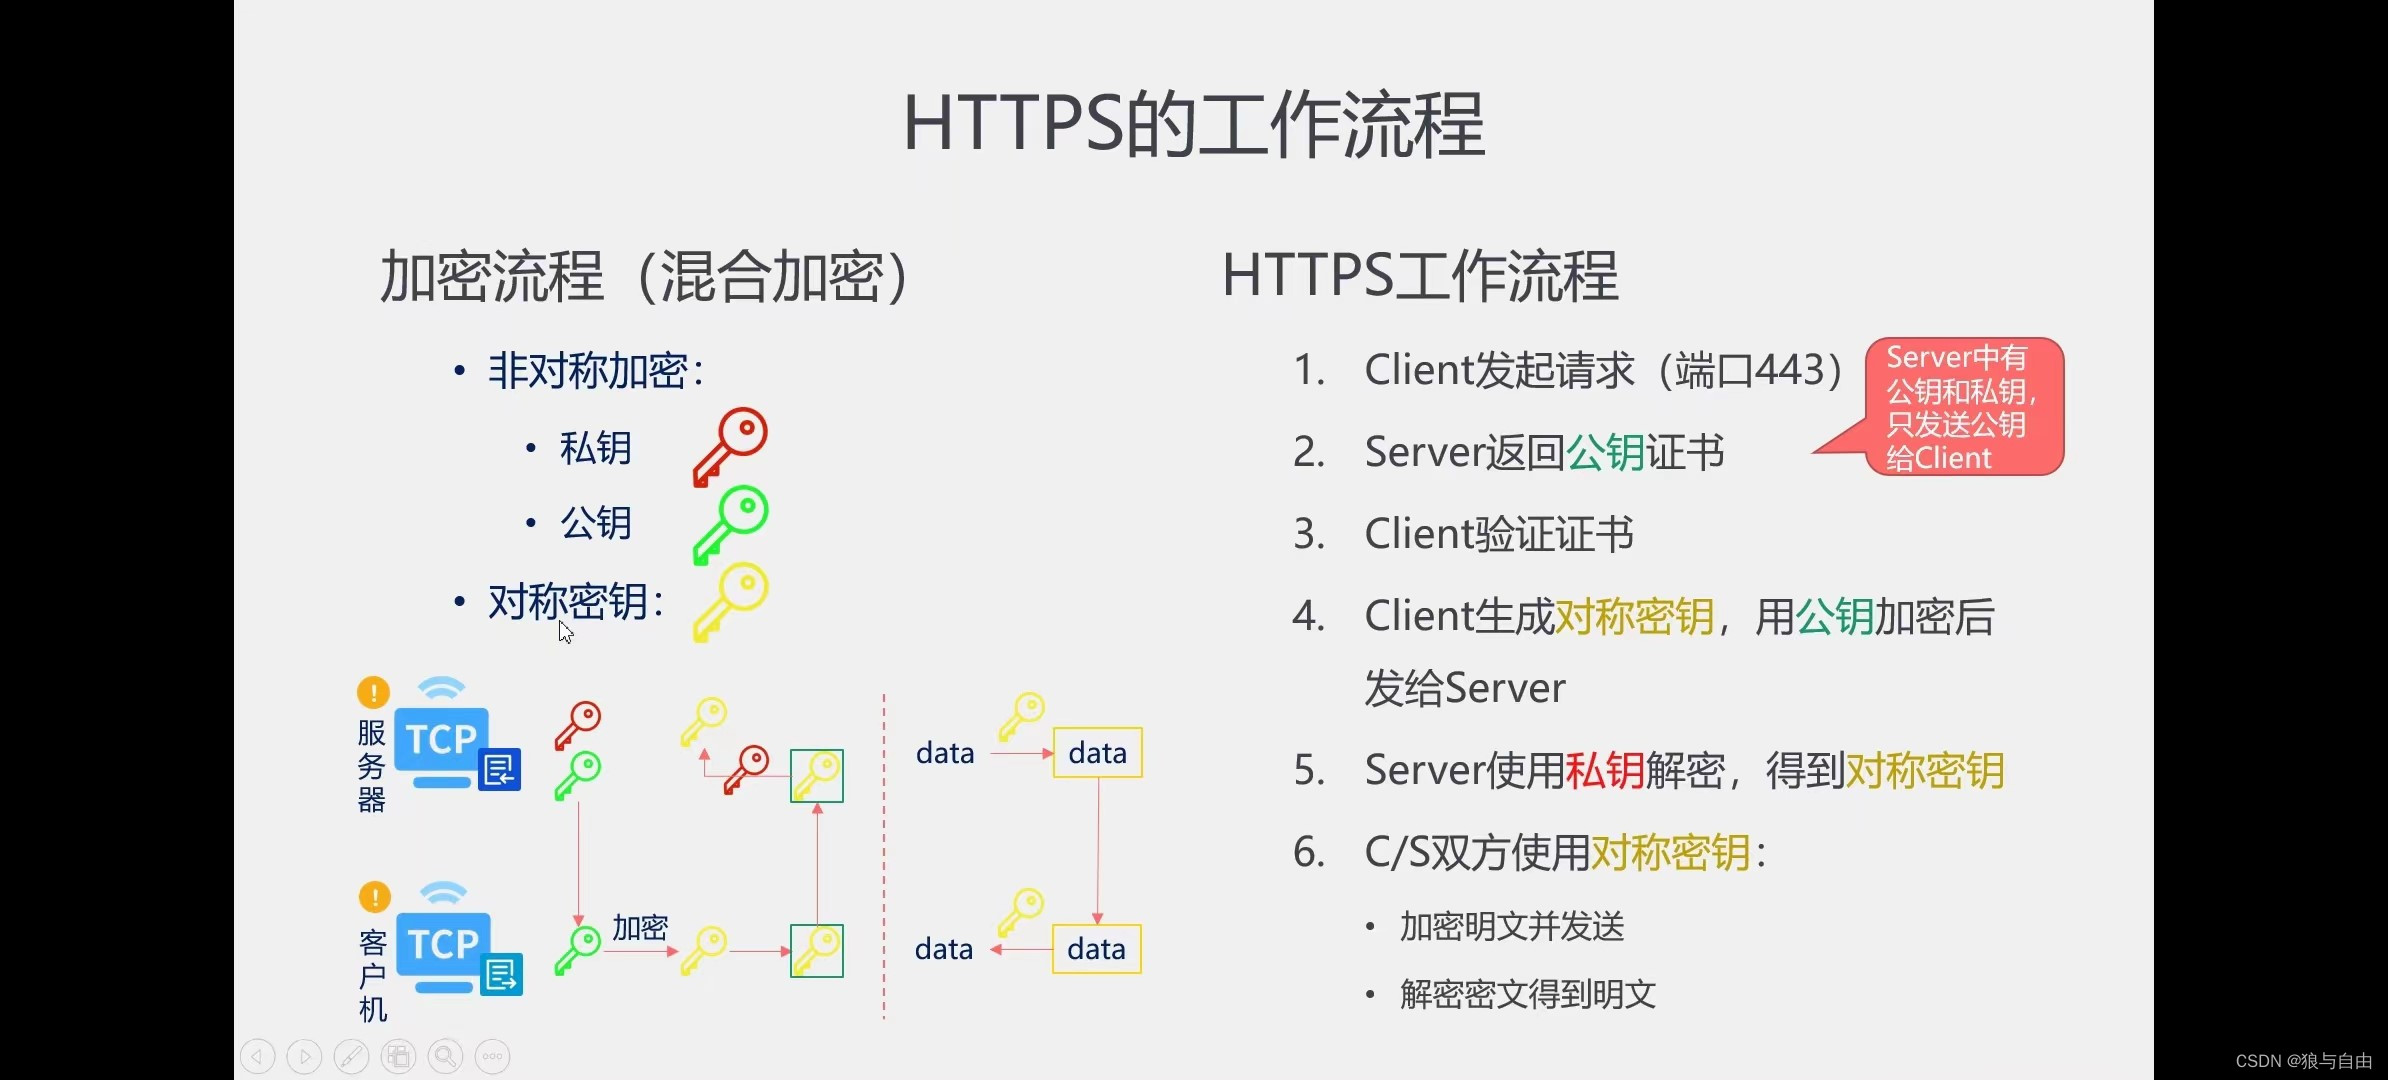  HTTPS详解